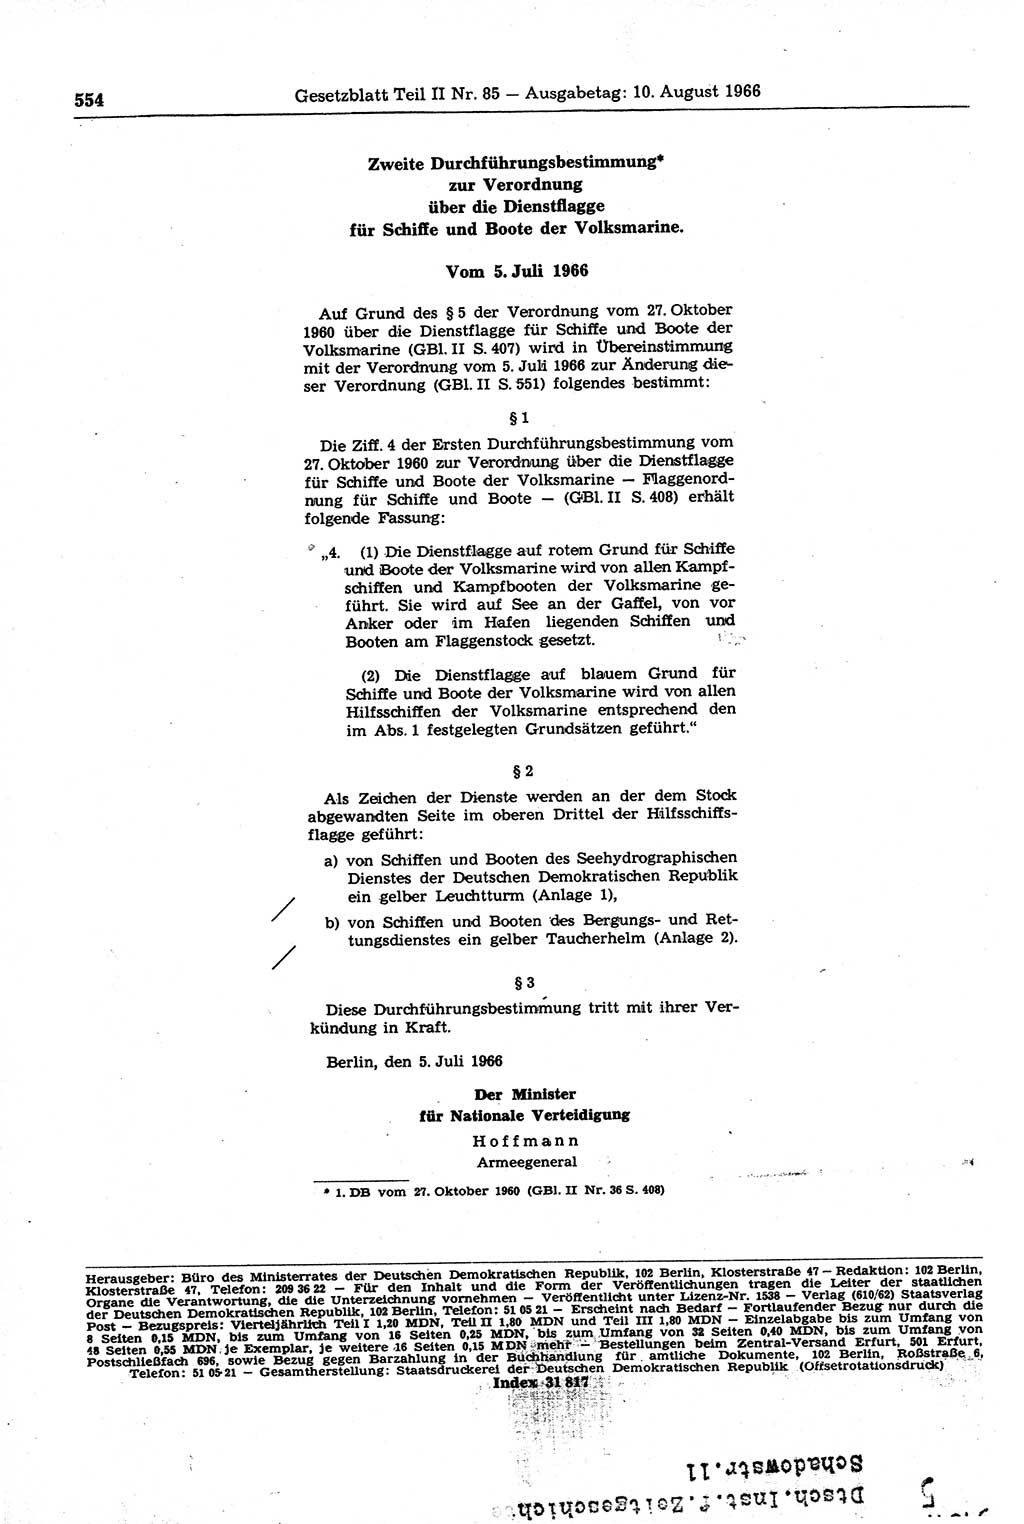 Gesetzblatt (GBl.) der Deutschen Demokratischen Republik (DDR) Teil ⅠⅠ 1966, Seite 554 (GBl. DDR ⅠⅠ 1966, S. 554)